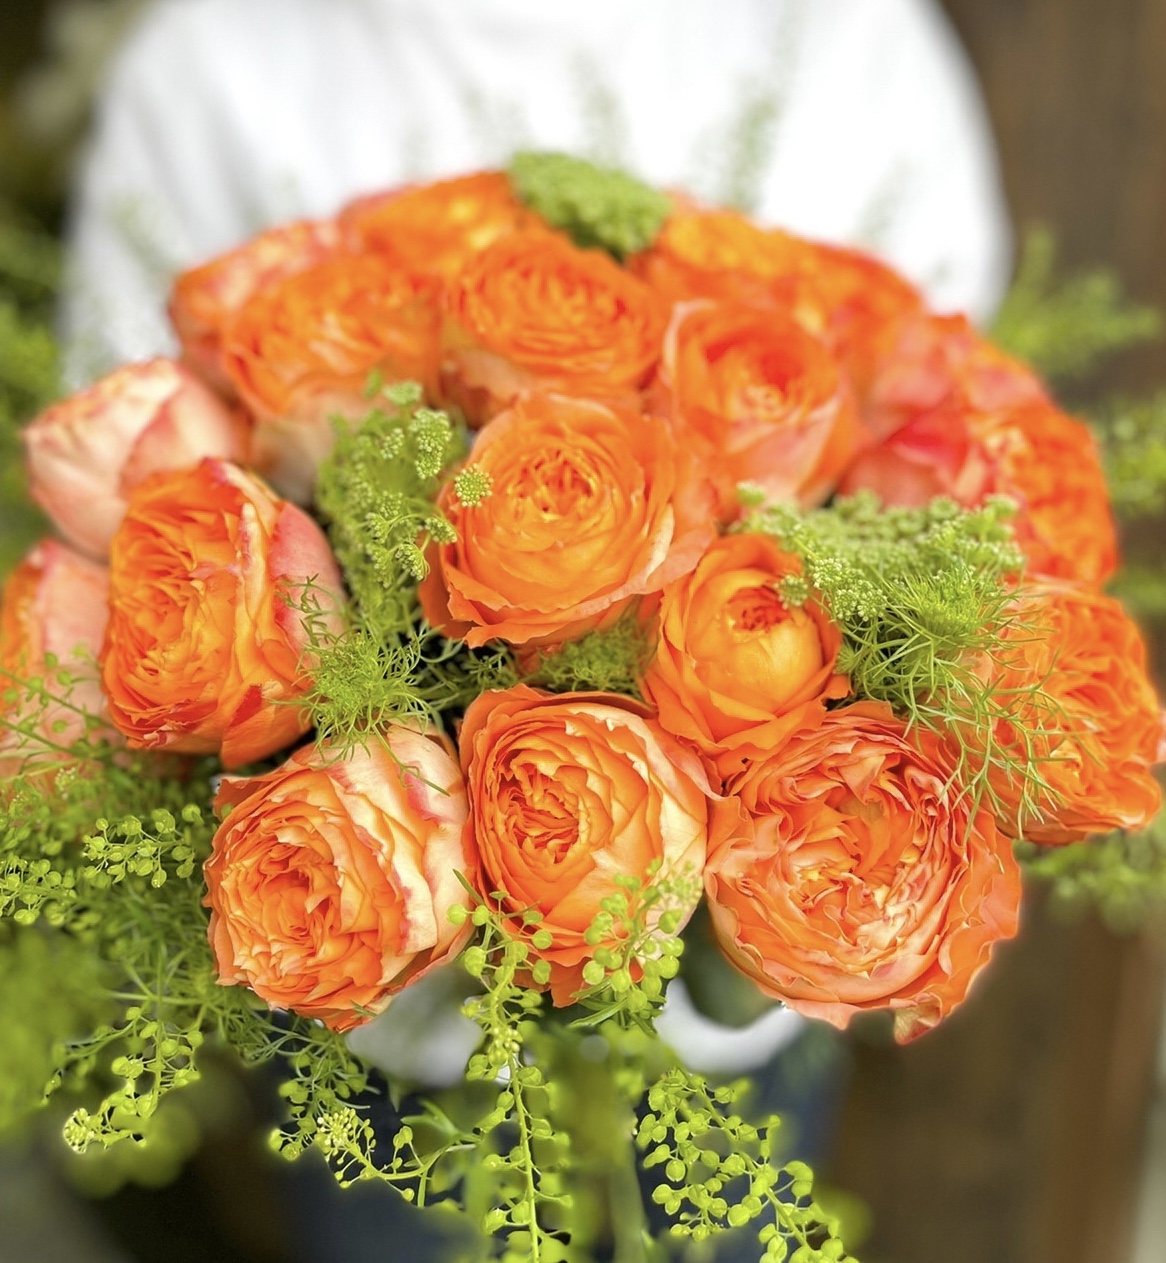 美しいフォルムが特徴的なオレンジバラの花束